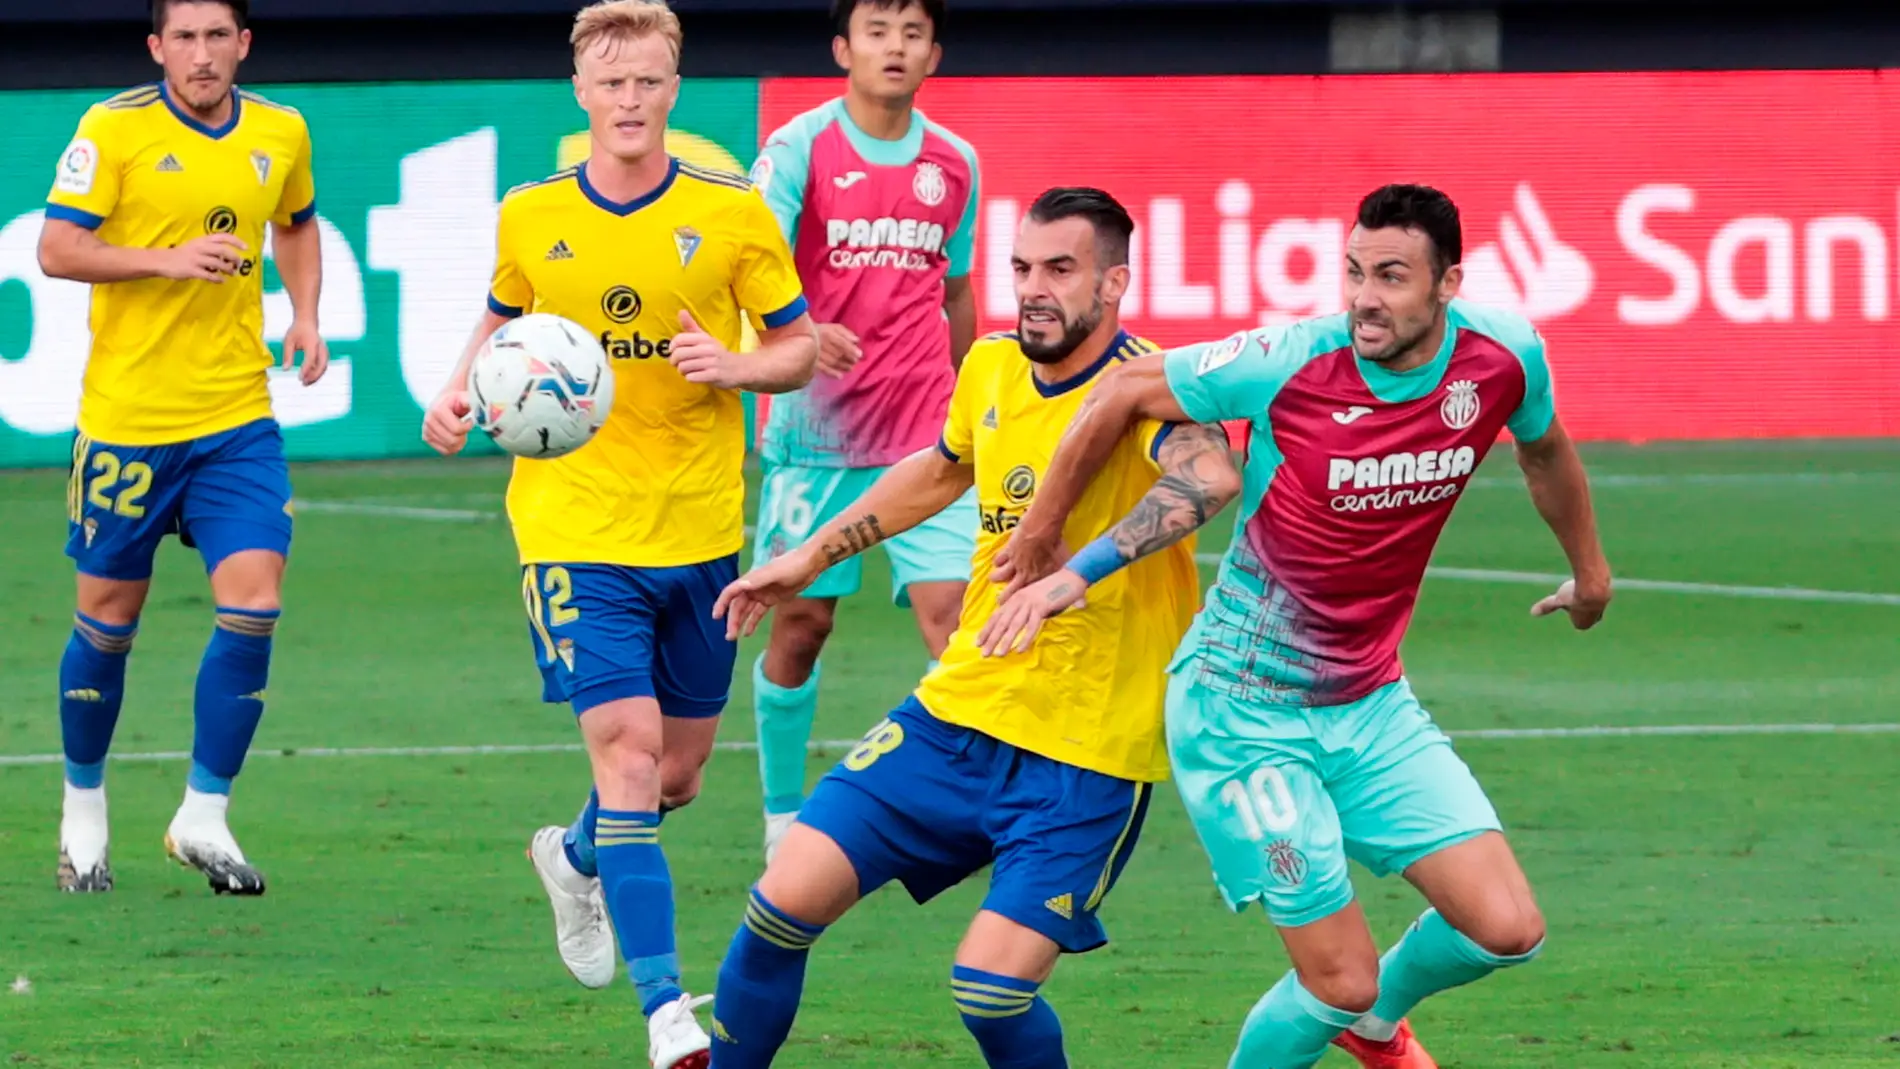  El delantero del Cádiz CF, Álvaro Negredo lucha por el balón con el centrocampista del Villareal CF, Vicente Iborra.